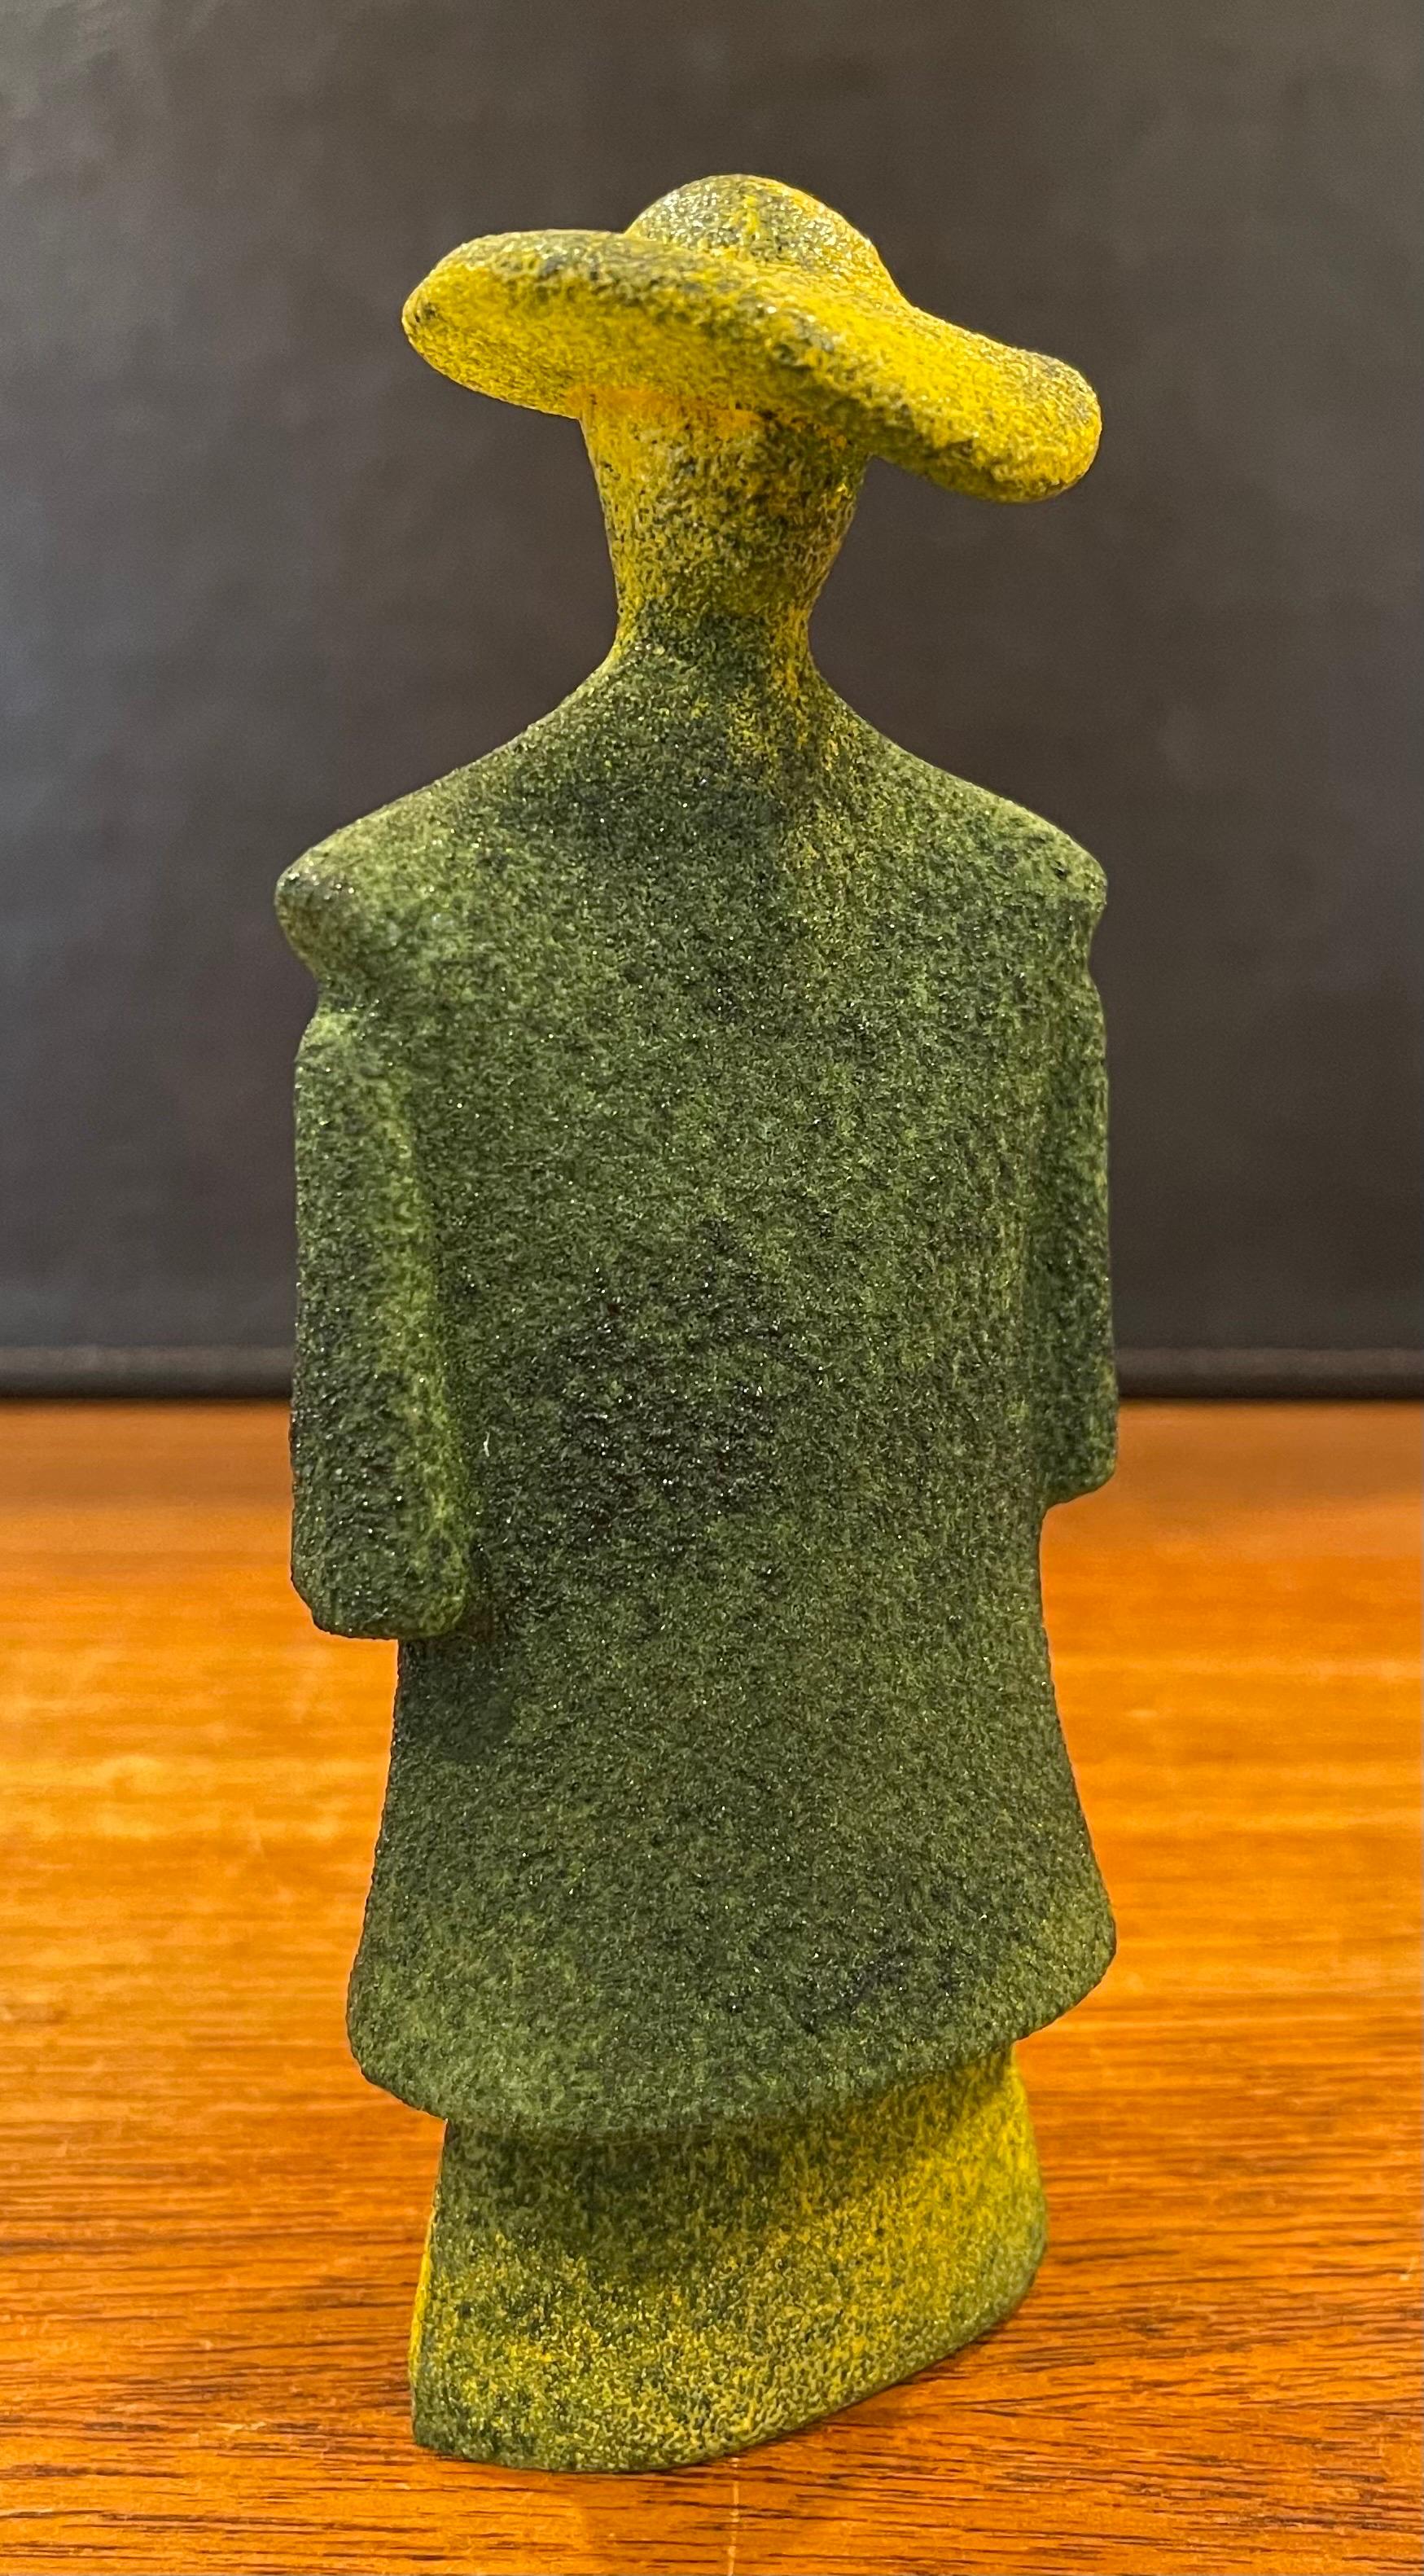 Poncho Green Art Glass Catwalk Sculpture by Kjell Engman for Kosta Boda Sweden For Sale 6